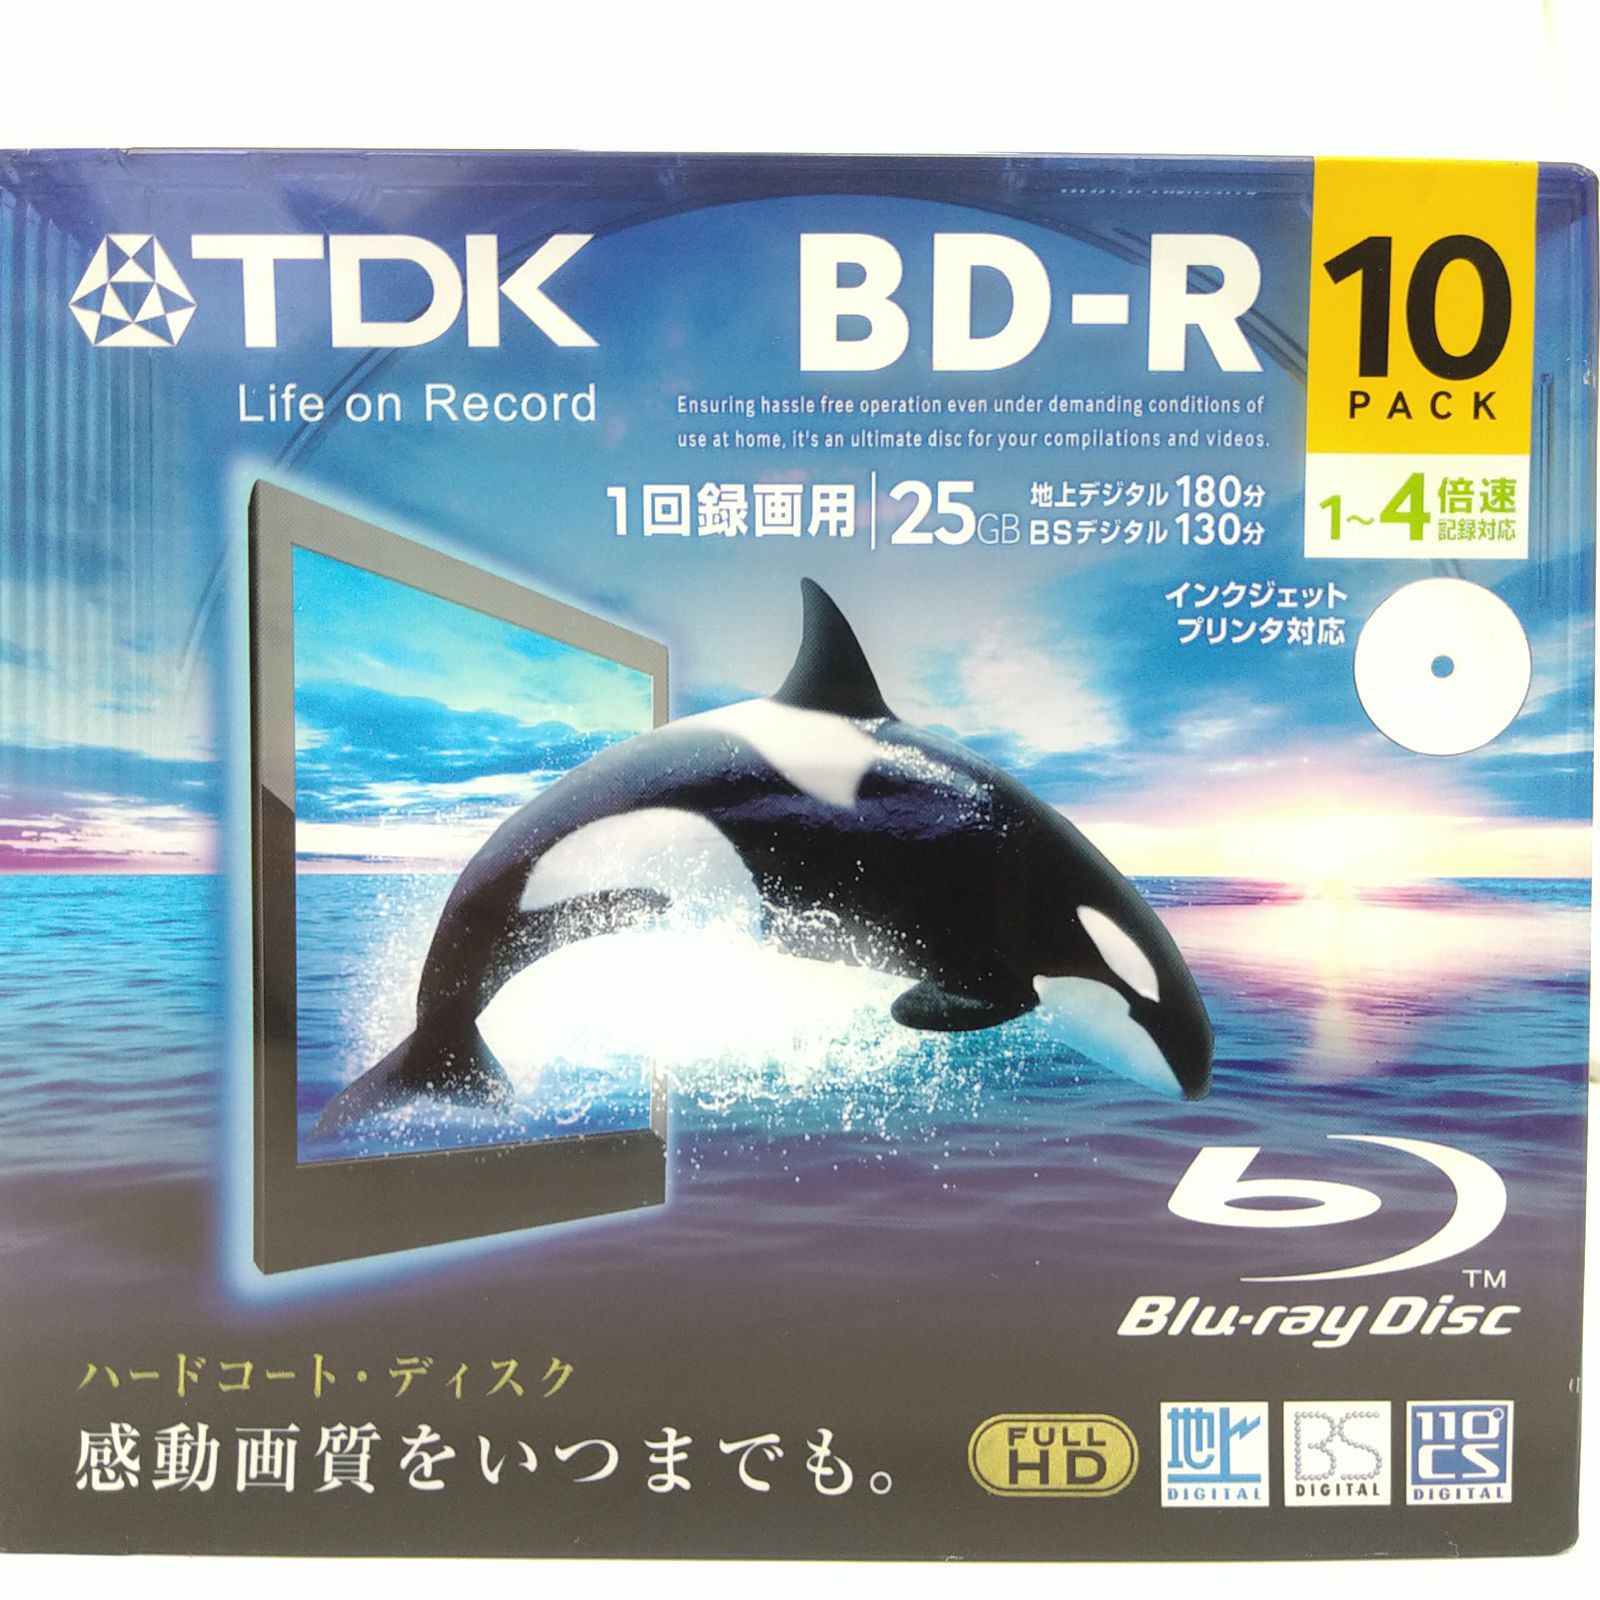 TDK 録画用ブルーレイディスク BD-R規格 25GB 1-4倍速 BRV25